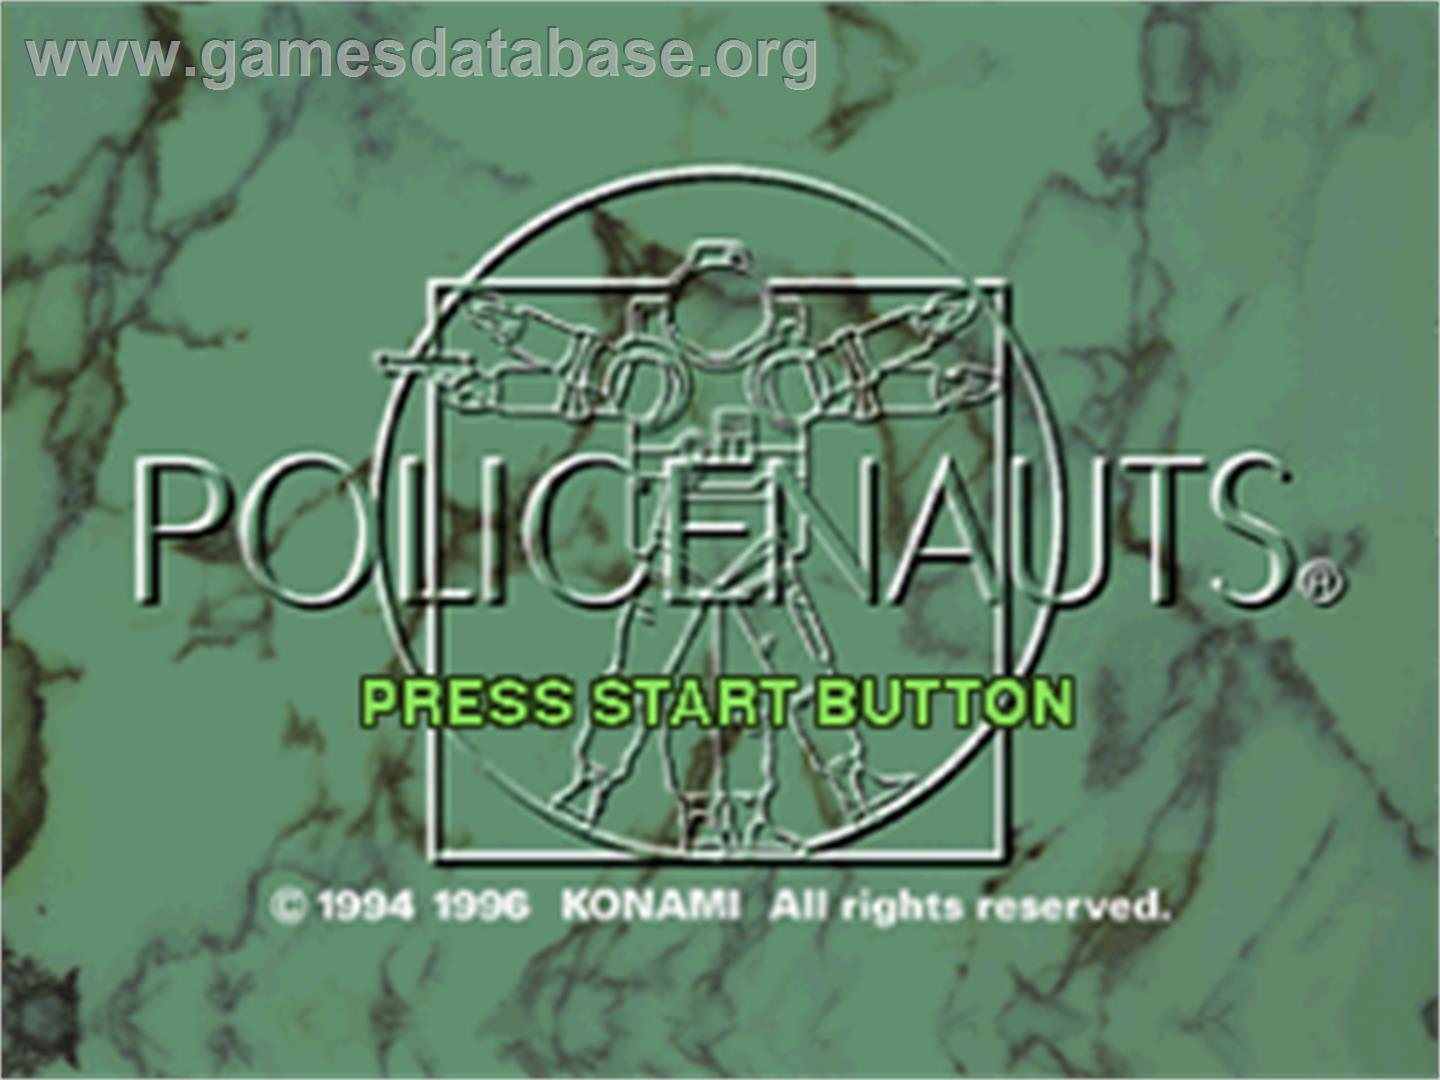 Policenauts - Sega Saturn - Artwork - Title Screen